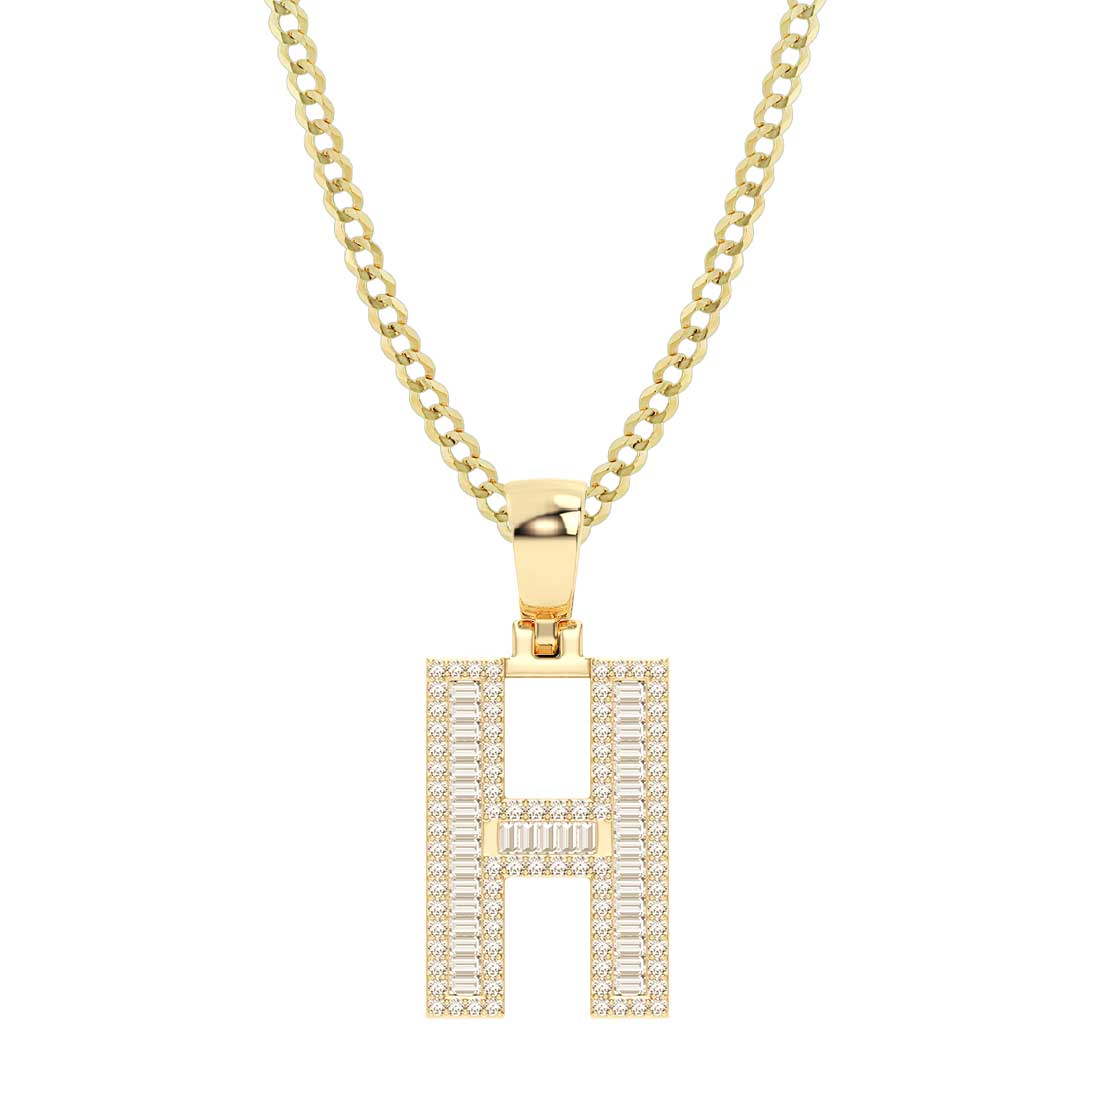 Baguette & Round Cut Diamond "H" Initial Pendant Necklace 0.57ct 14K Gold